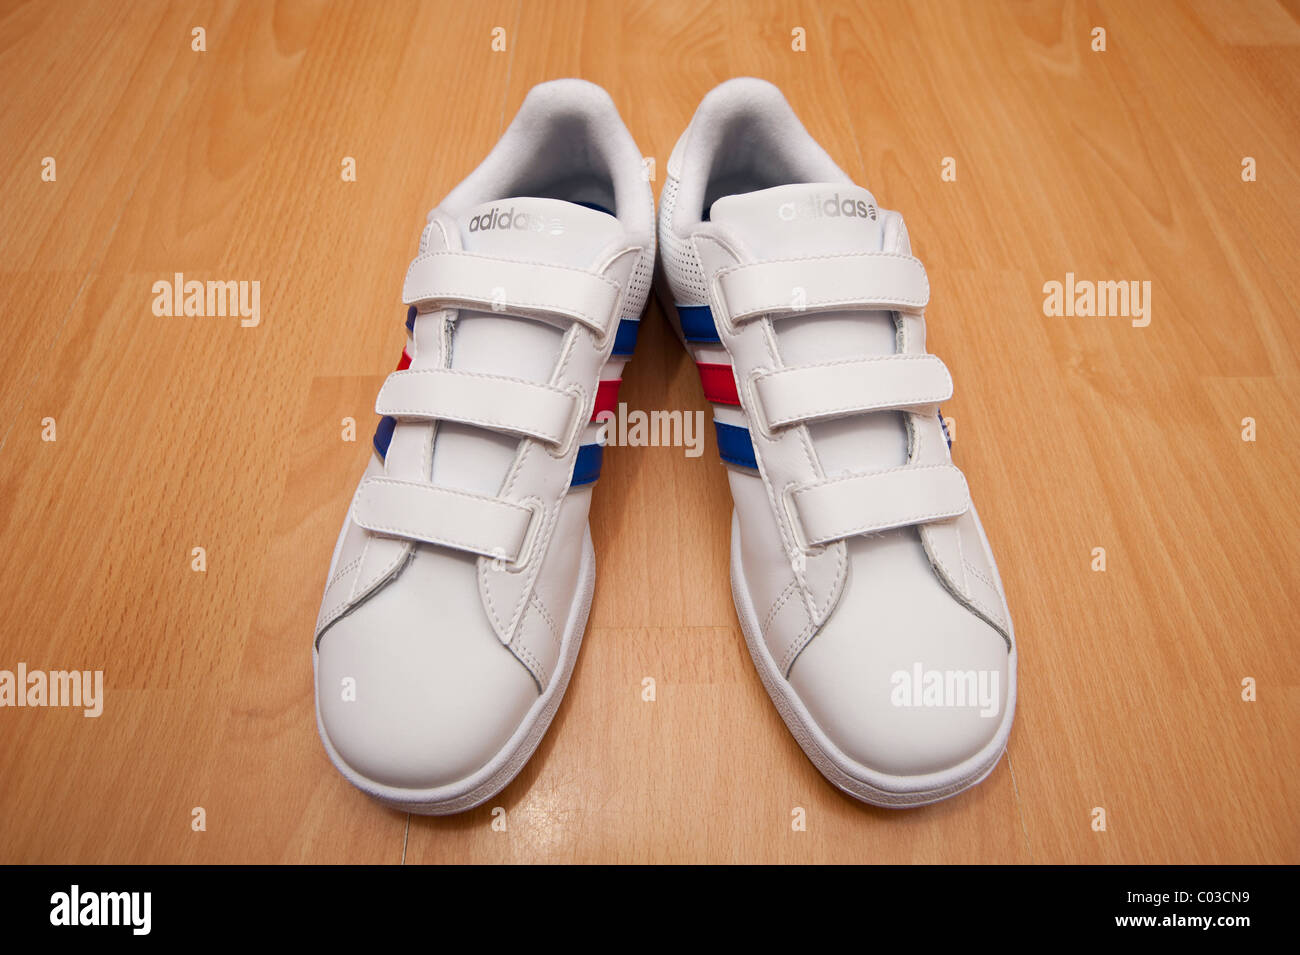 Ein Bild von ein paar ganz neue Adidas Klettverschluss für Kinder Schuhe  (Ausbilder) Ausbildung Stockfotografie - Alamy